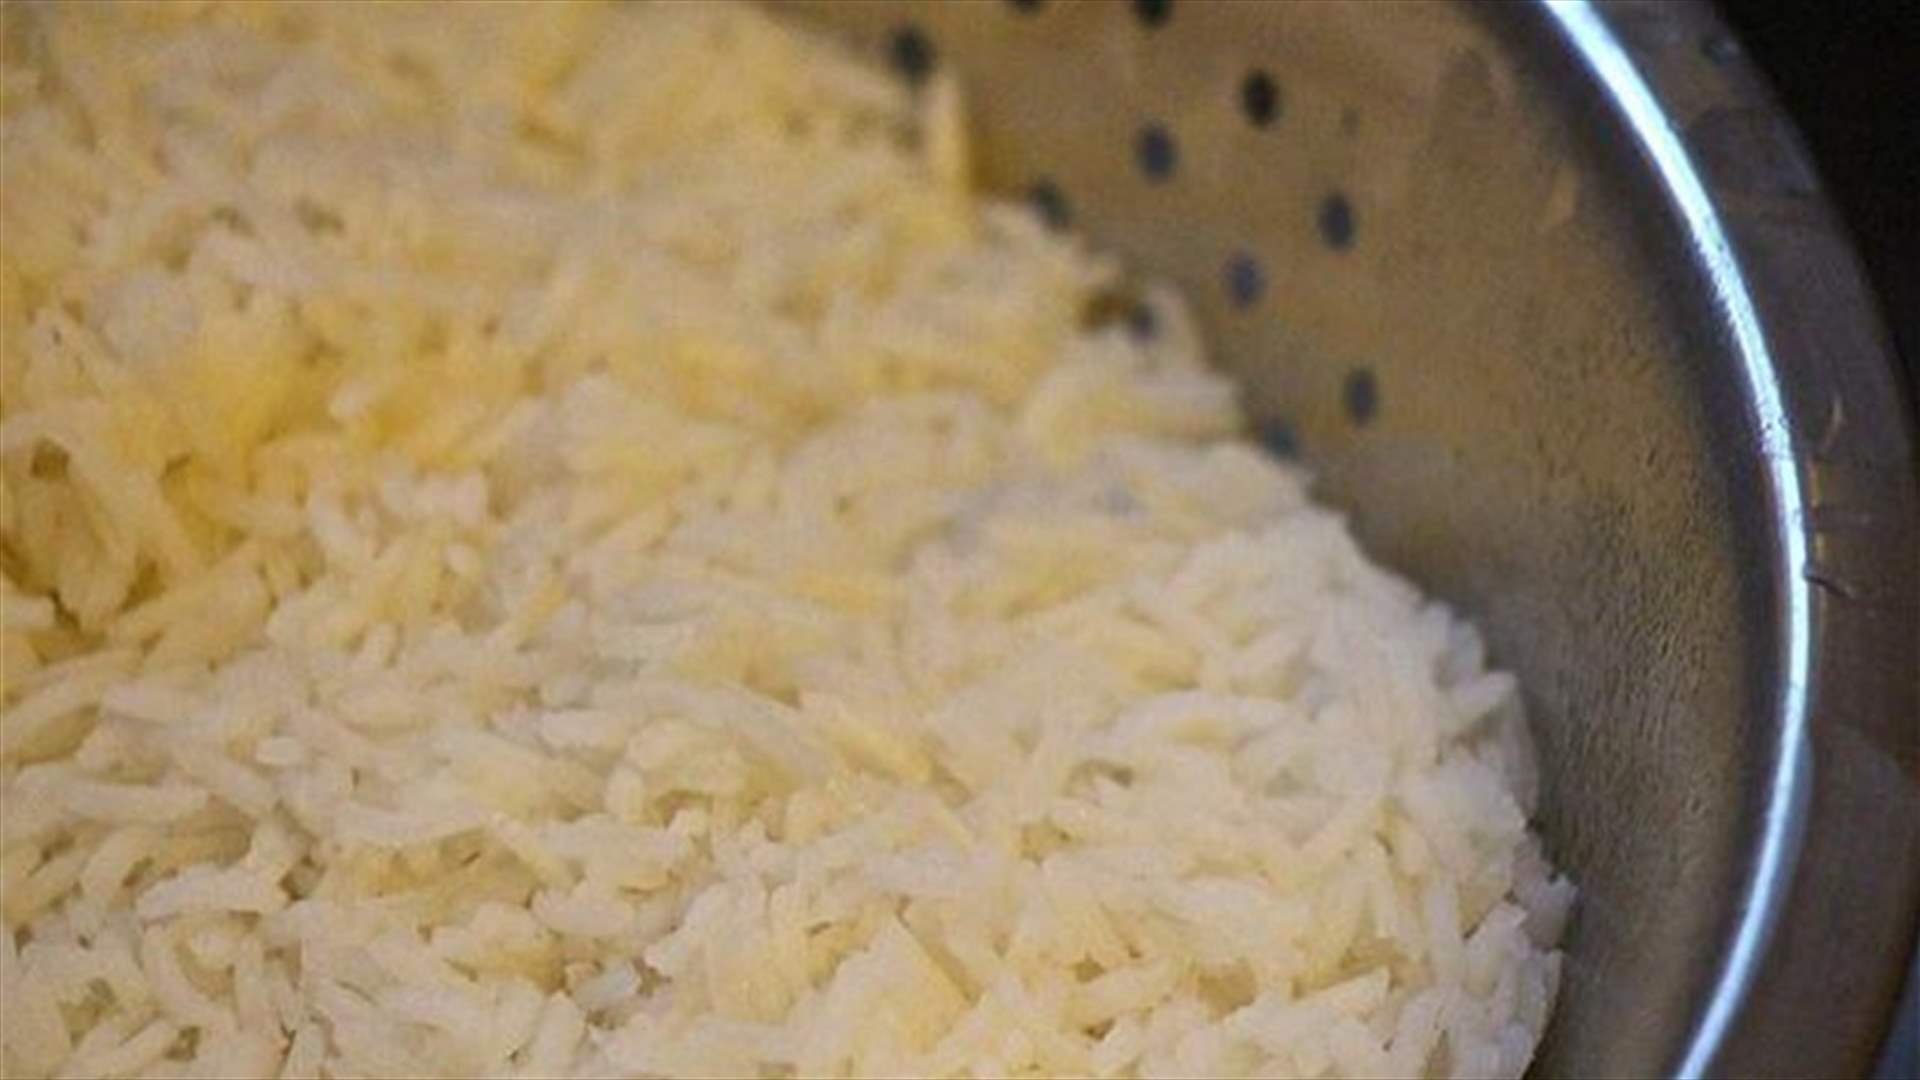 الطريقة التقليدية لطهي الأرز تؤدي إلى الإصابة بالسرطان